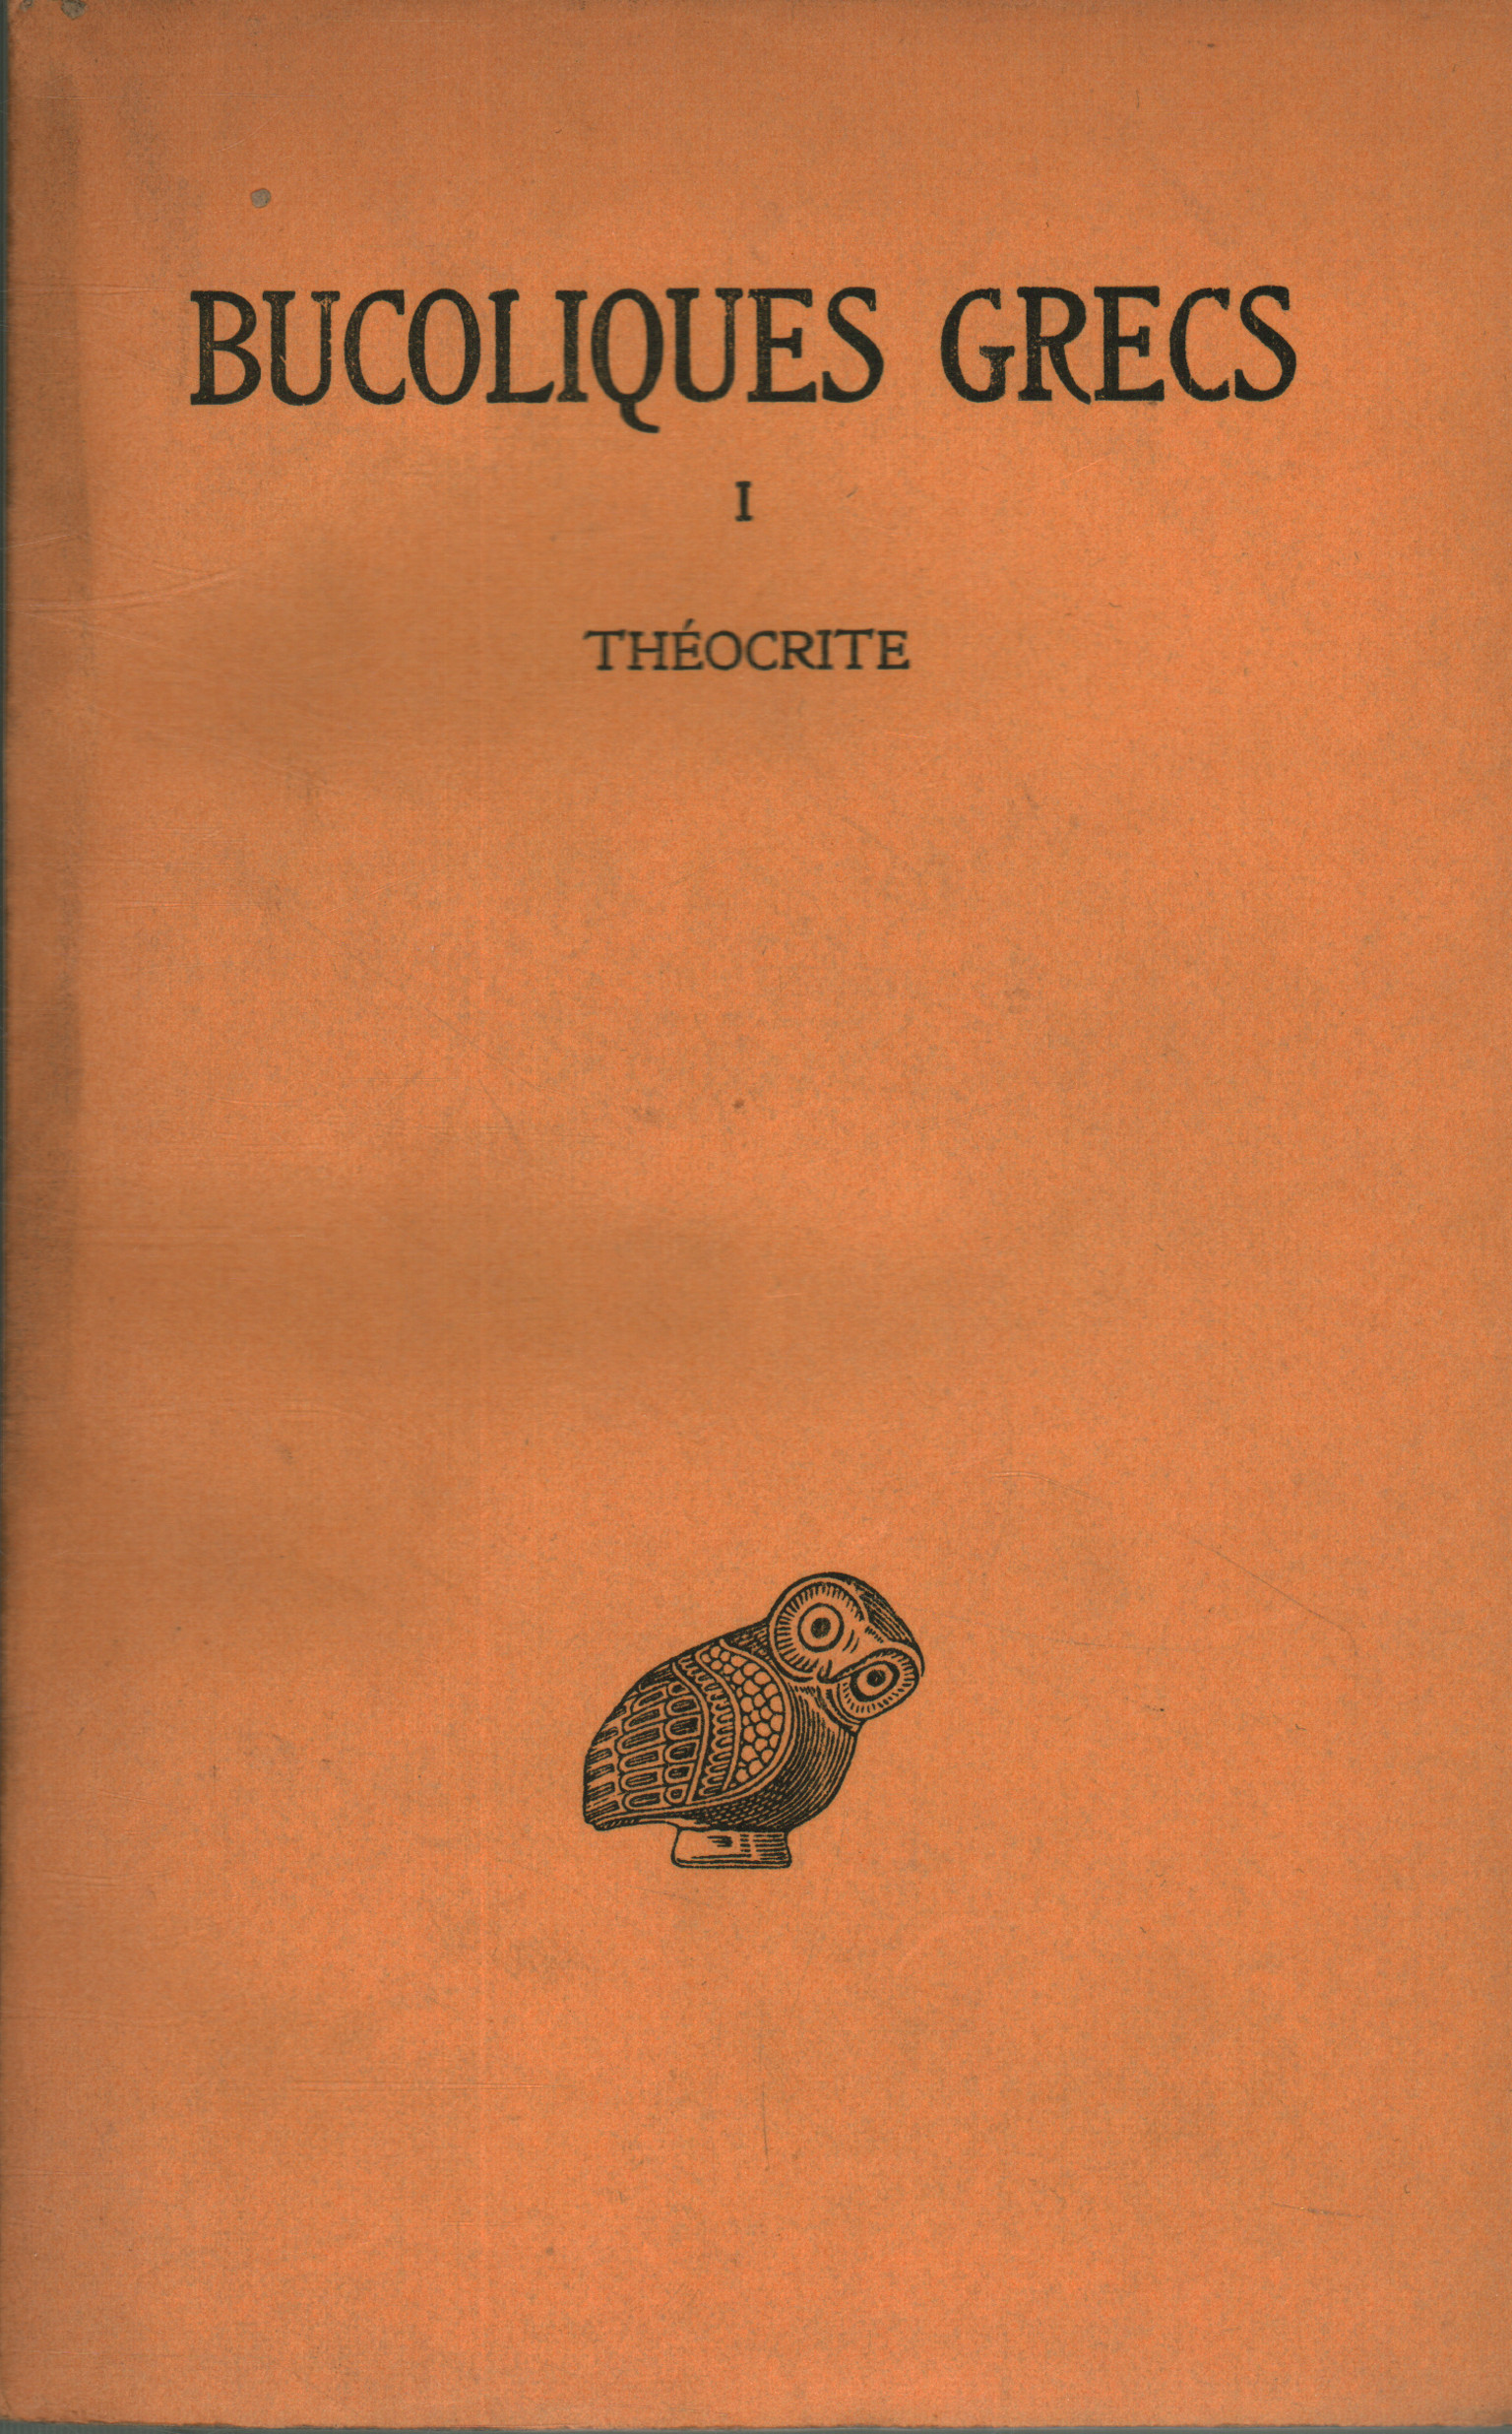 Bucoliques grecs. Tome I. Thèocrite, Ph. E. Legrand